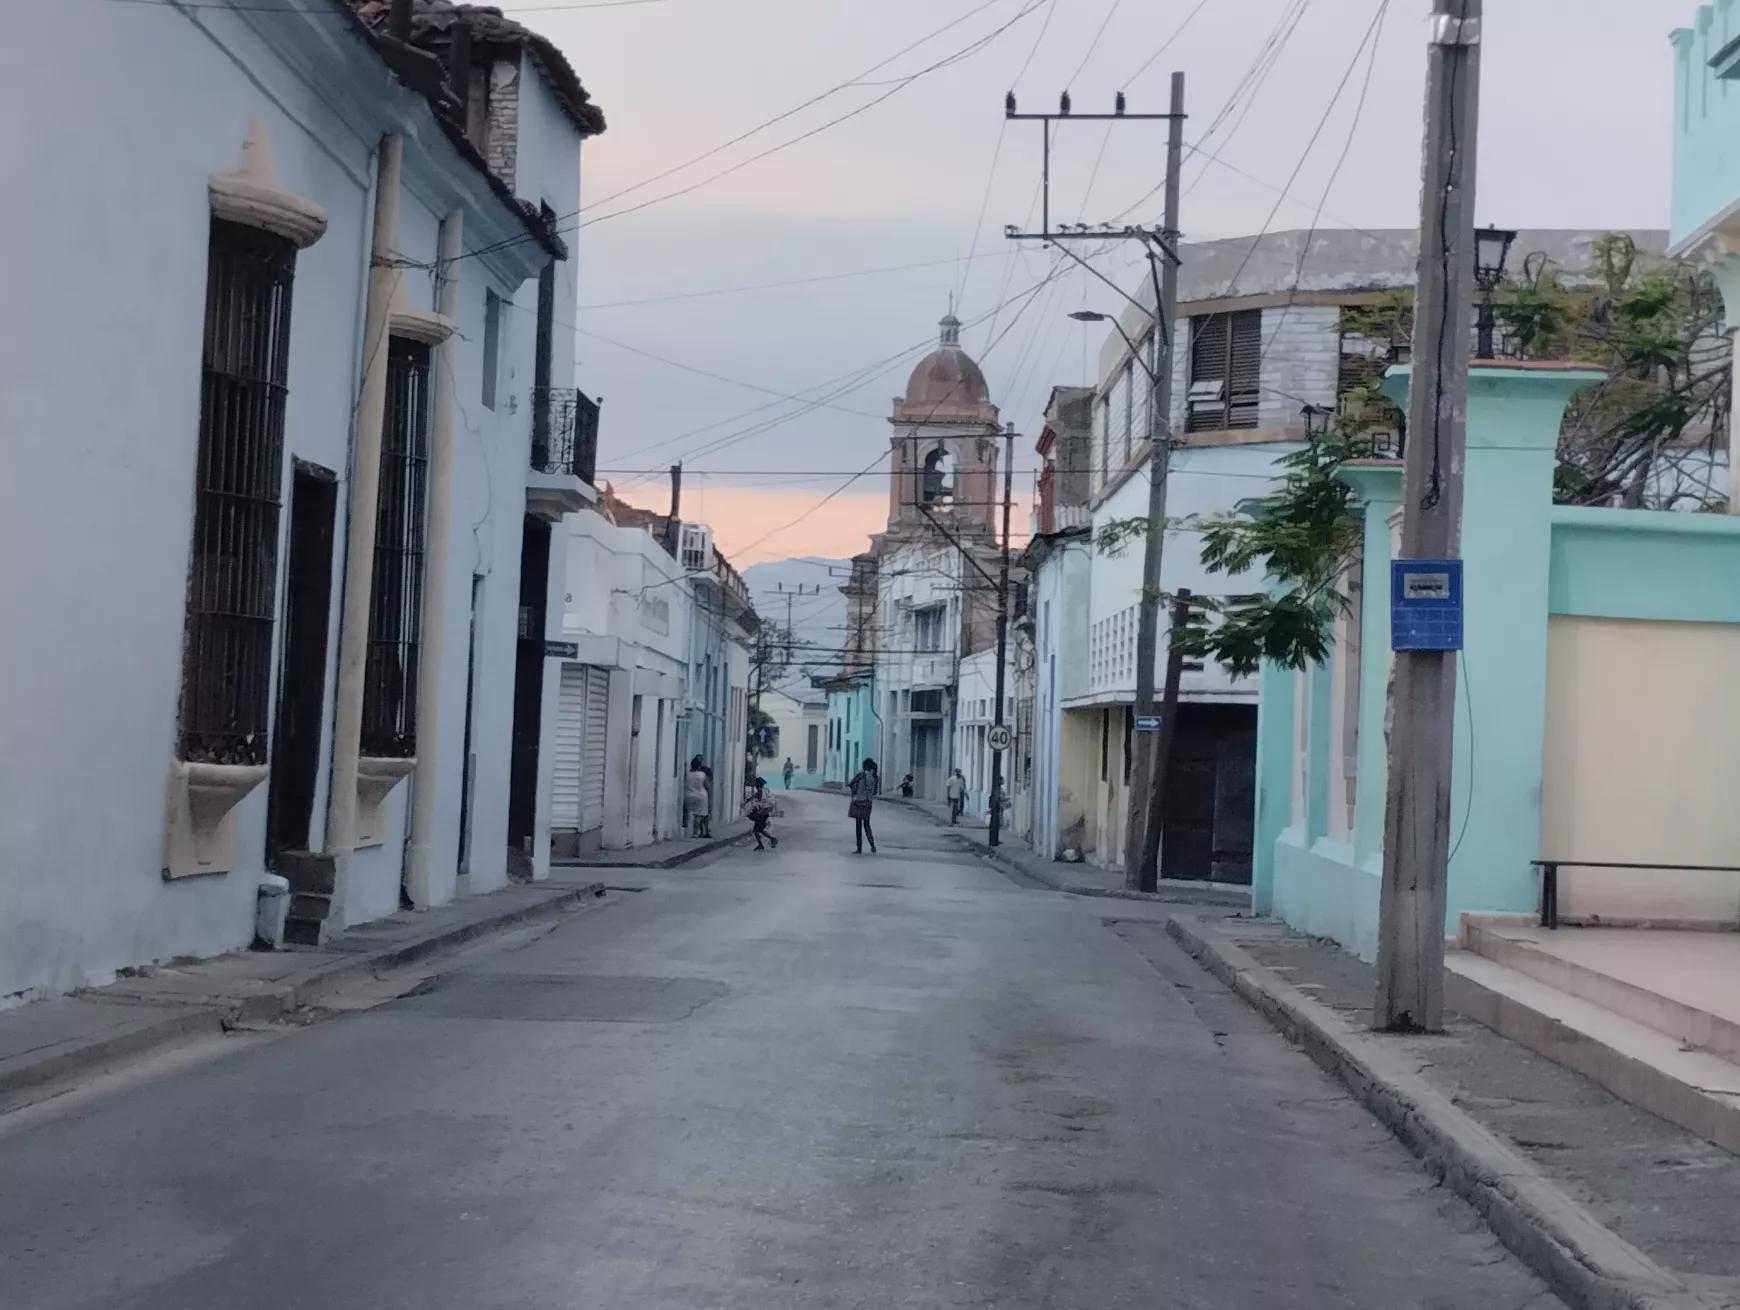 Barangoló - Kuba III. 